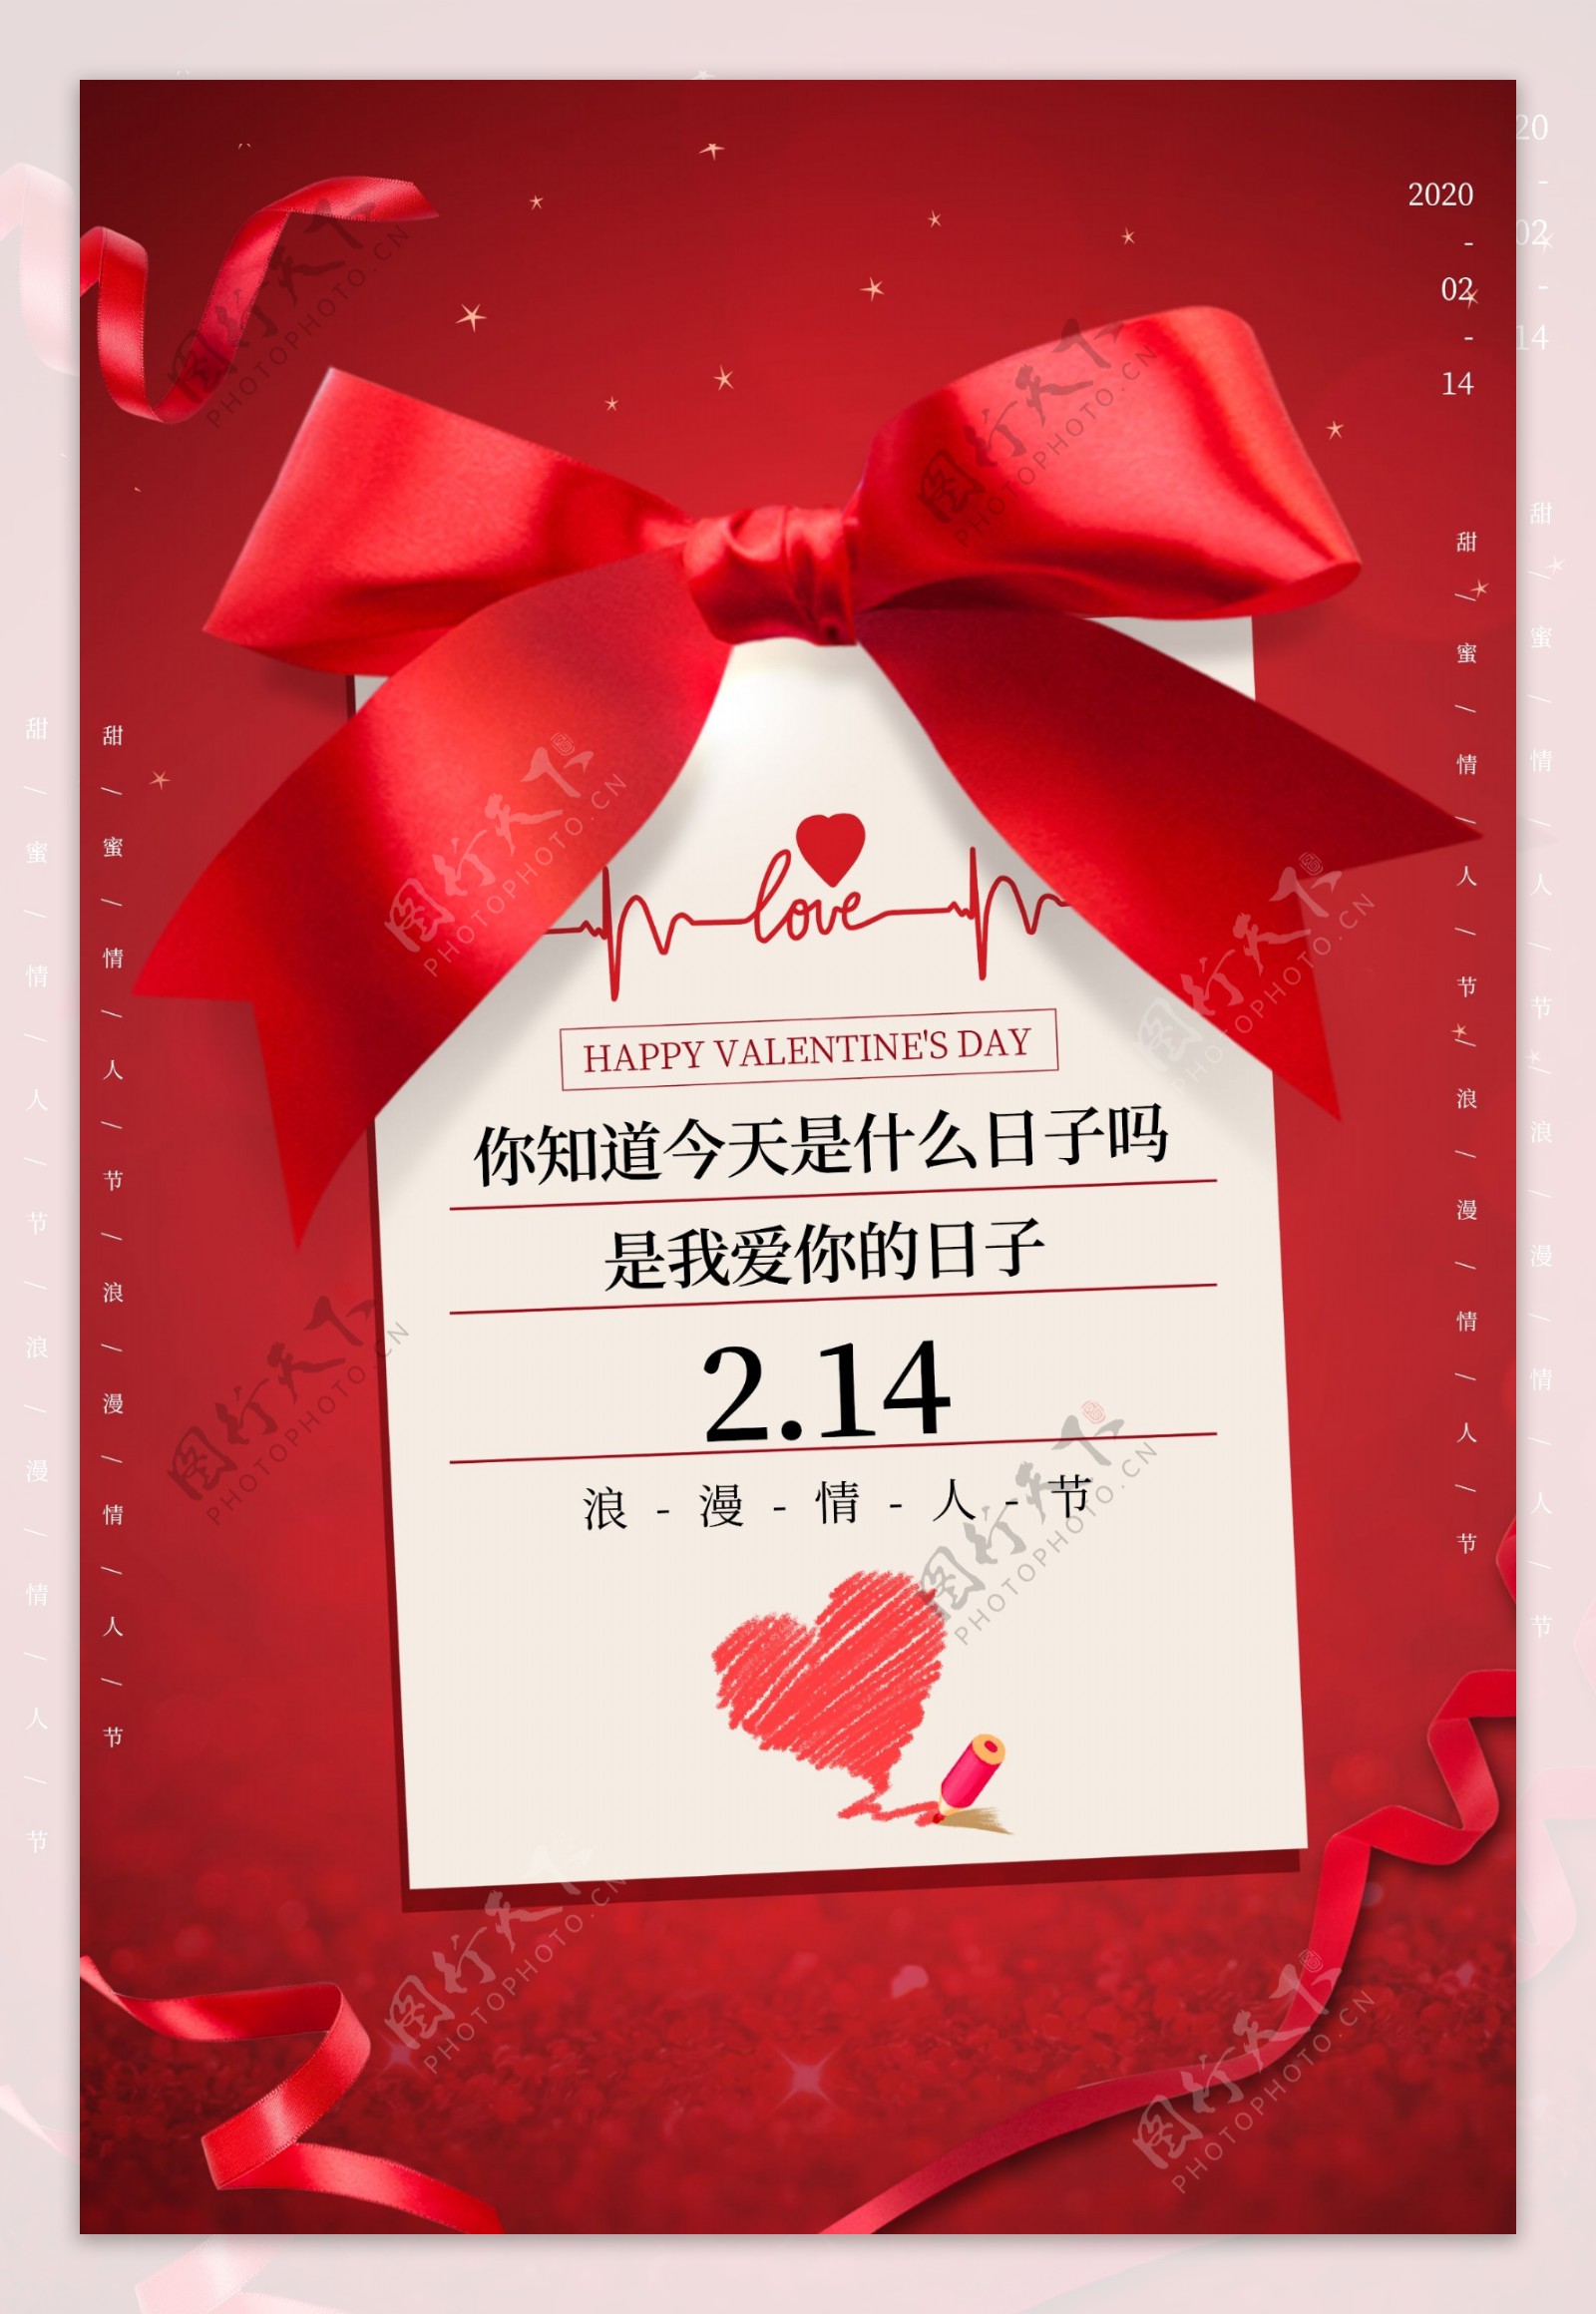 情人节节日活动促销宣传海报素材